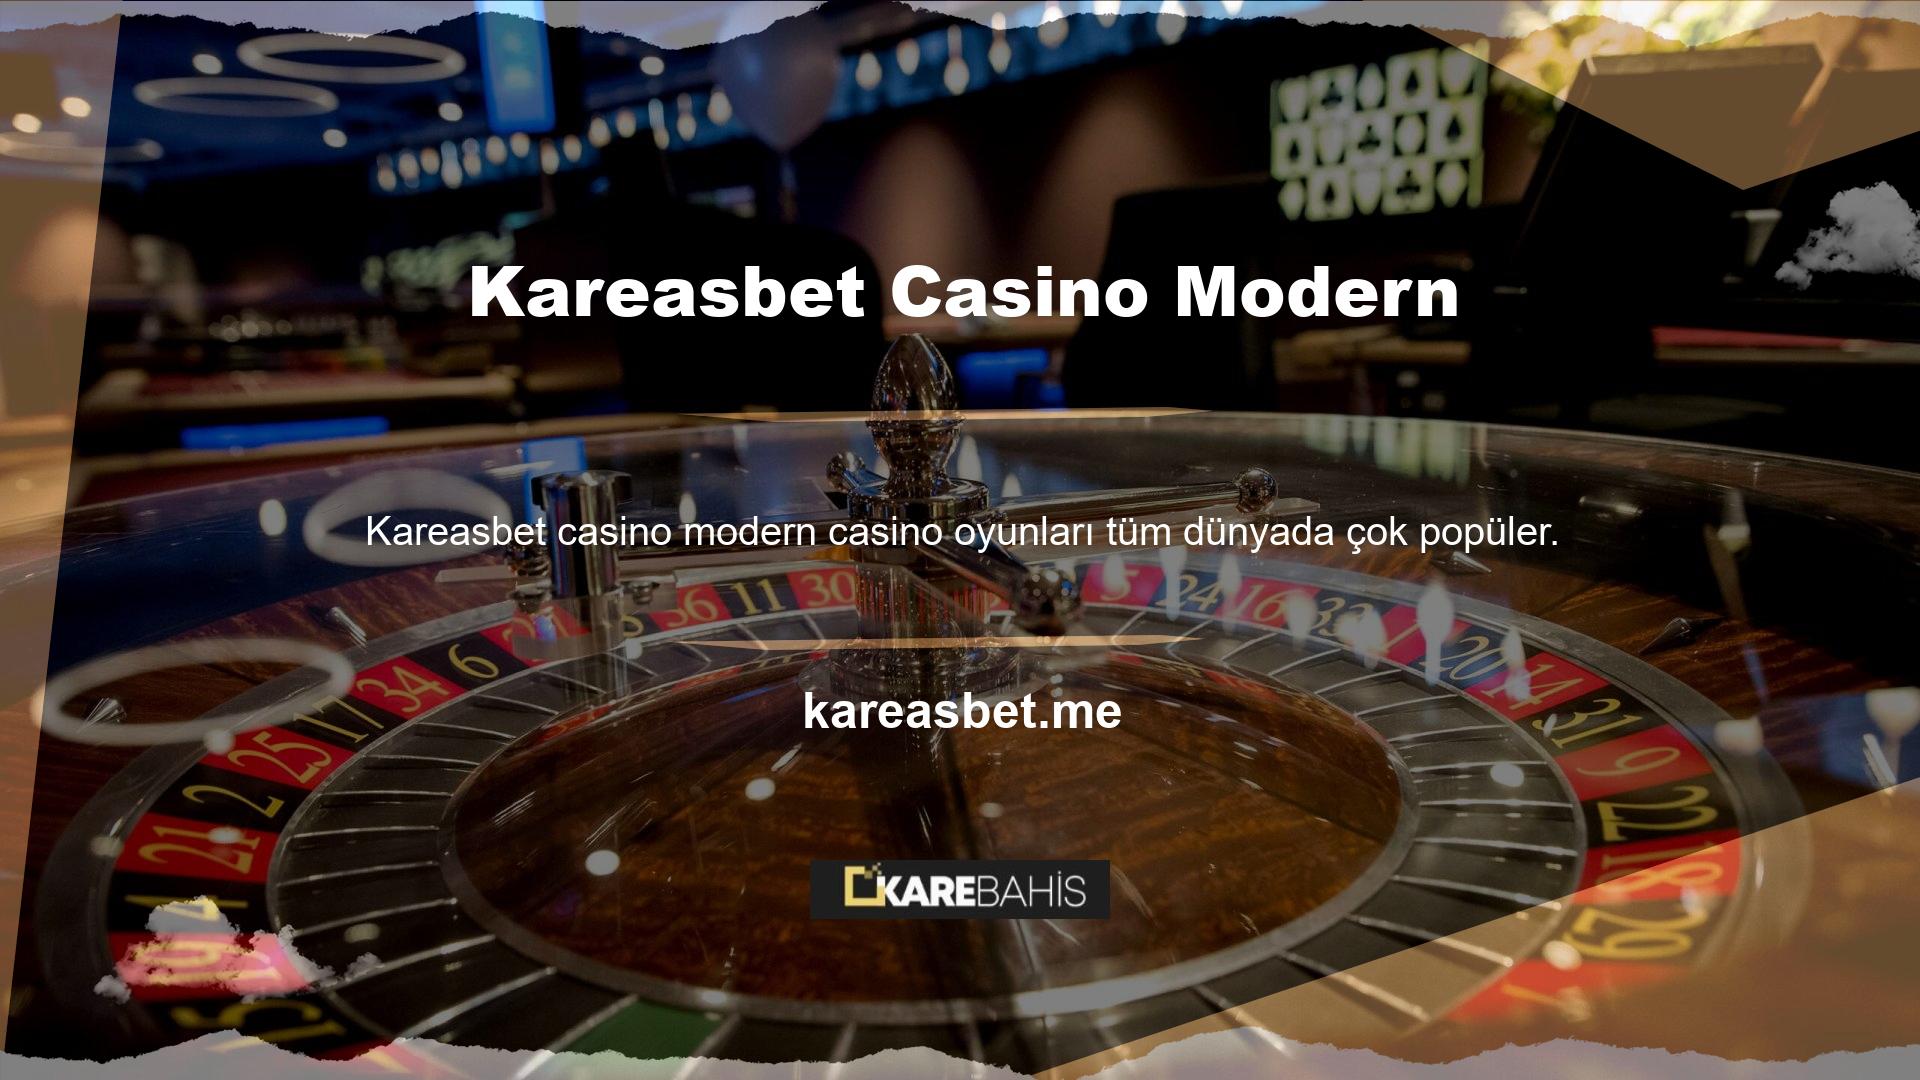 Kareasbet Casino'nun modern üyelik kayıt sitesinde casino oyunları da mevcut olduğundan sıkılmadan dışarı çıkabilirsiniz